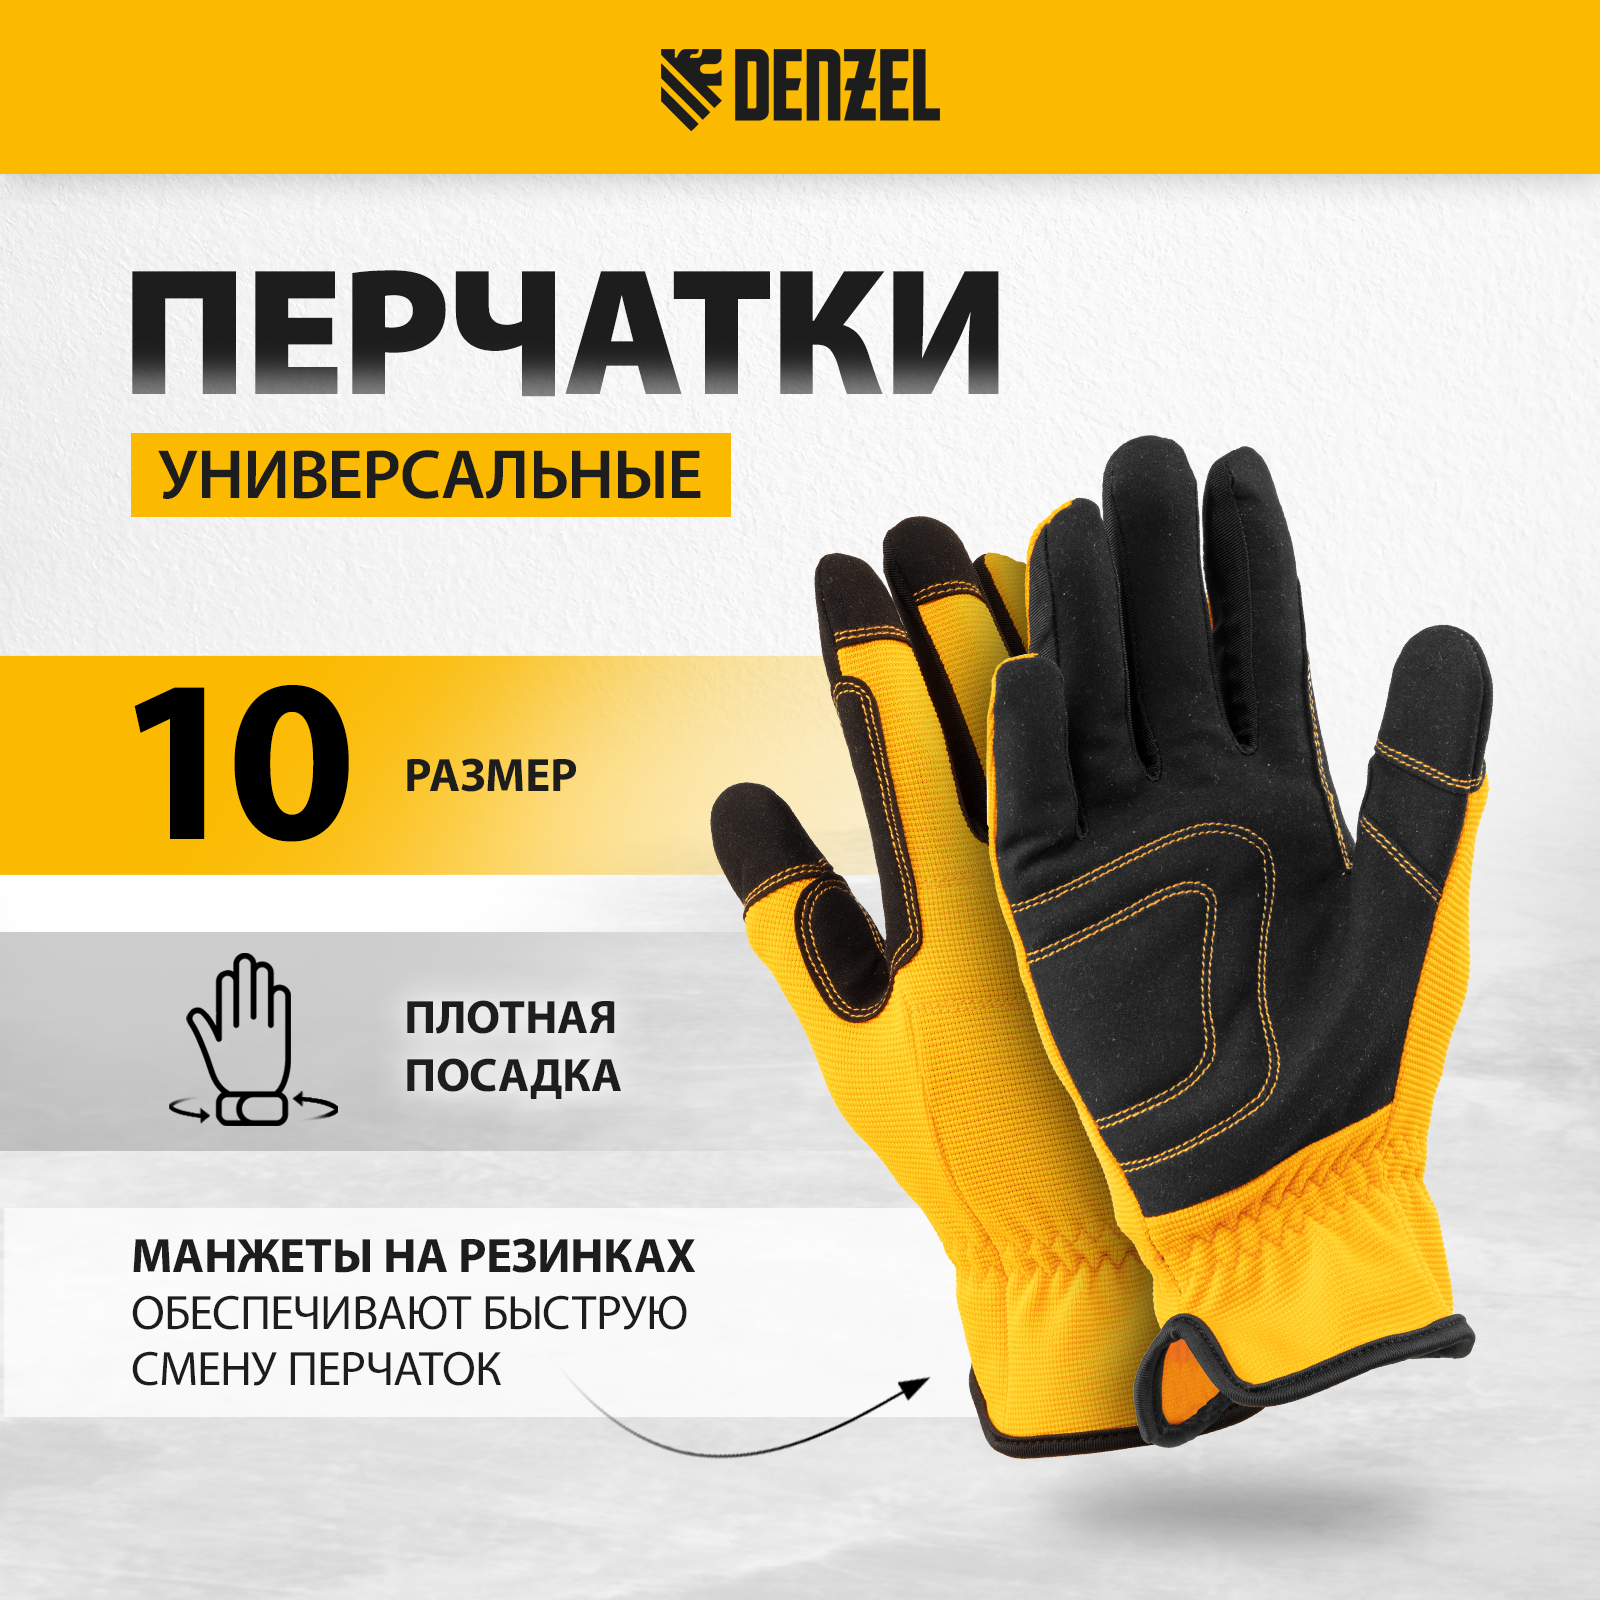 Перчатки универсальные DENZEL размер 10 67997 универсальные хлопчатобумажные перчатки zolder